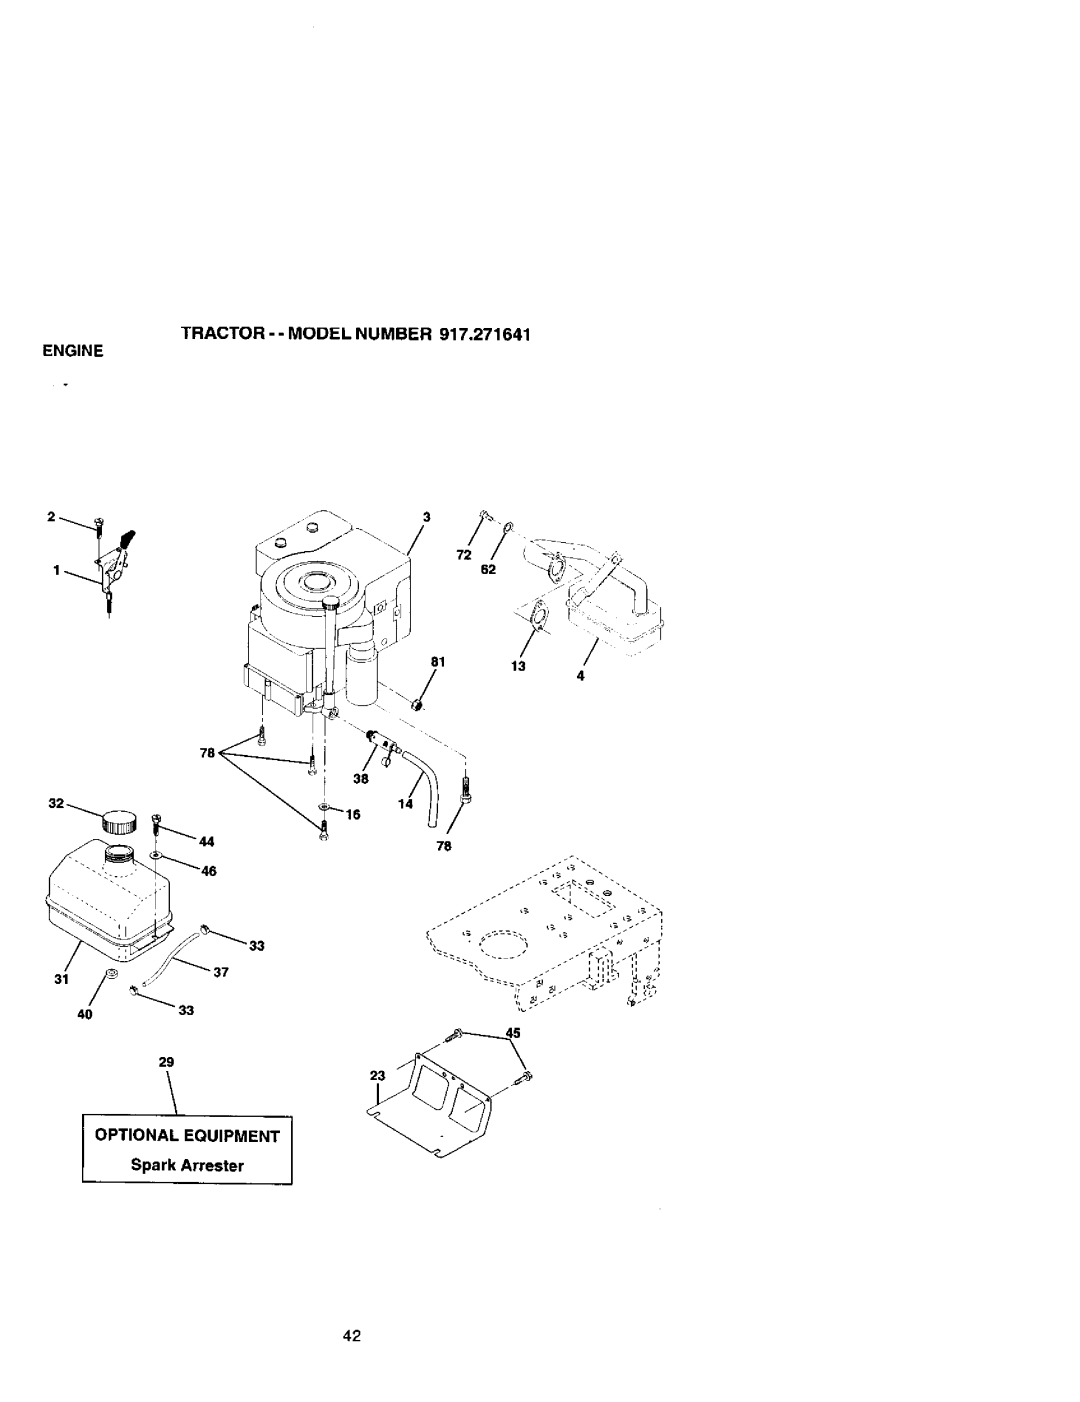 Craftsman 917.271641 owner manual Engine, TRACTOR - - MODEL NUMBER 917,271641 